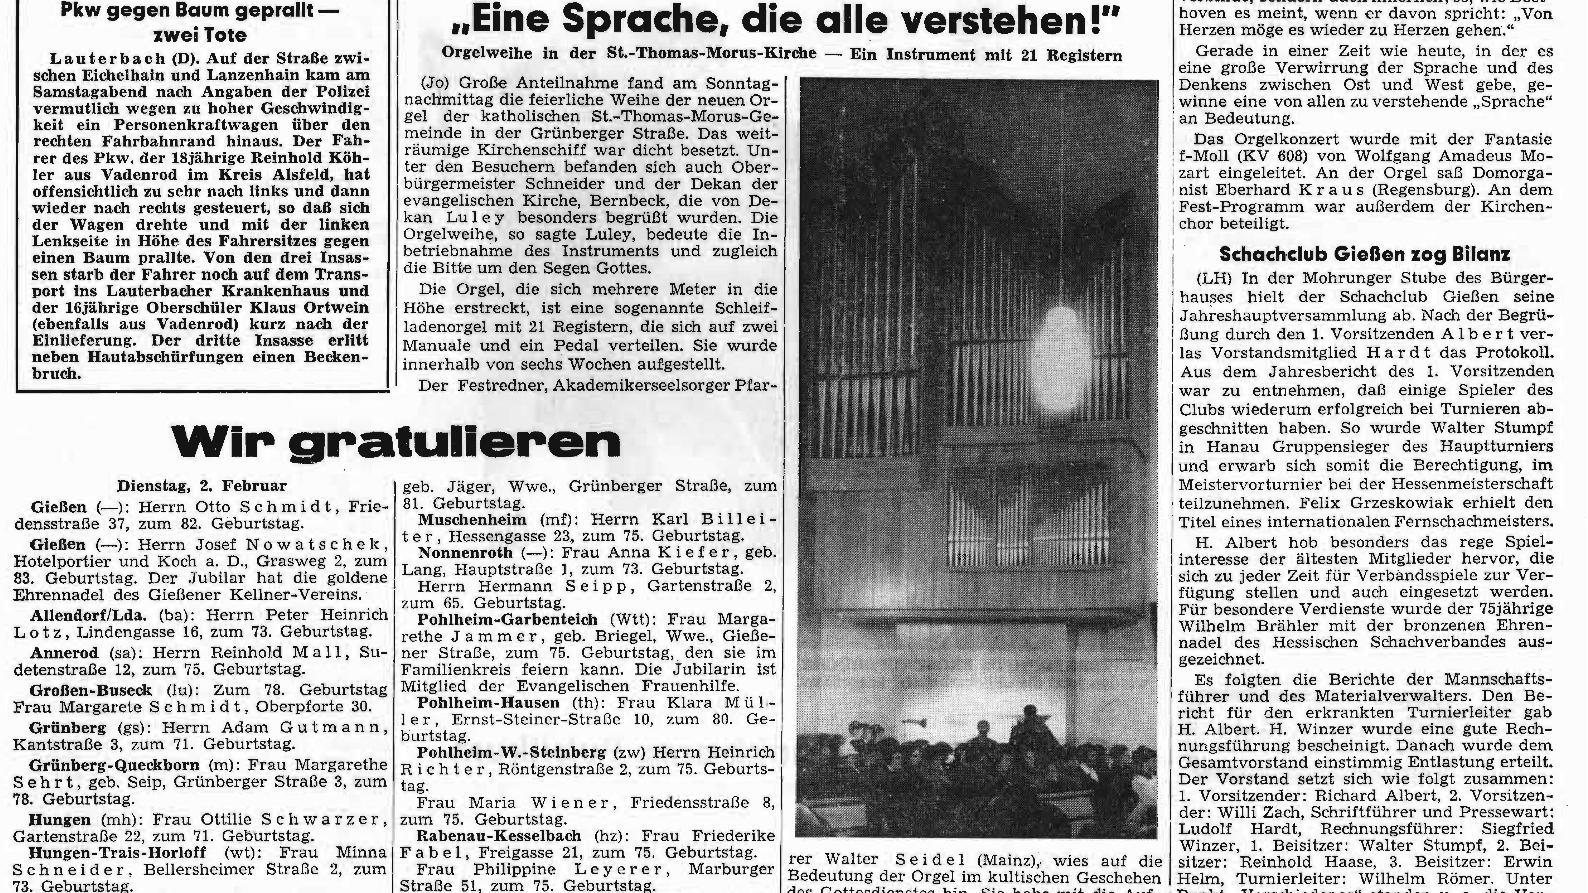 Artikel der Gießener Allgemeine Zeitung vom 2. Februar 1971 (c) Gießener Allgemeine Zeitung